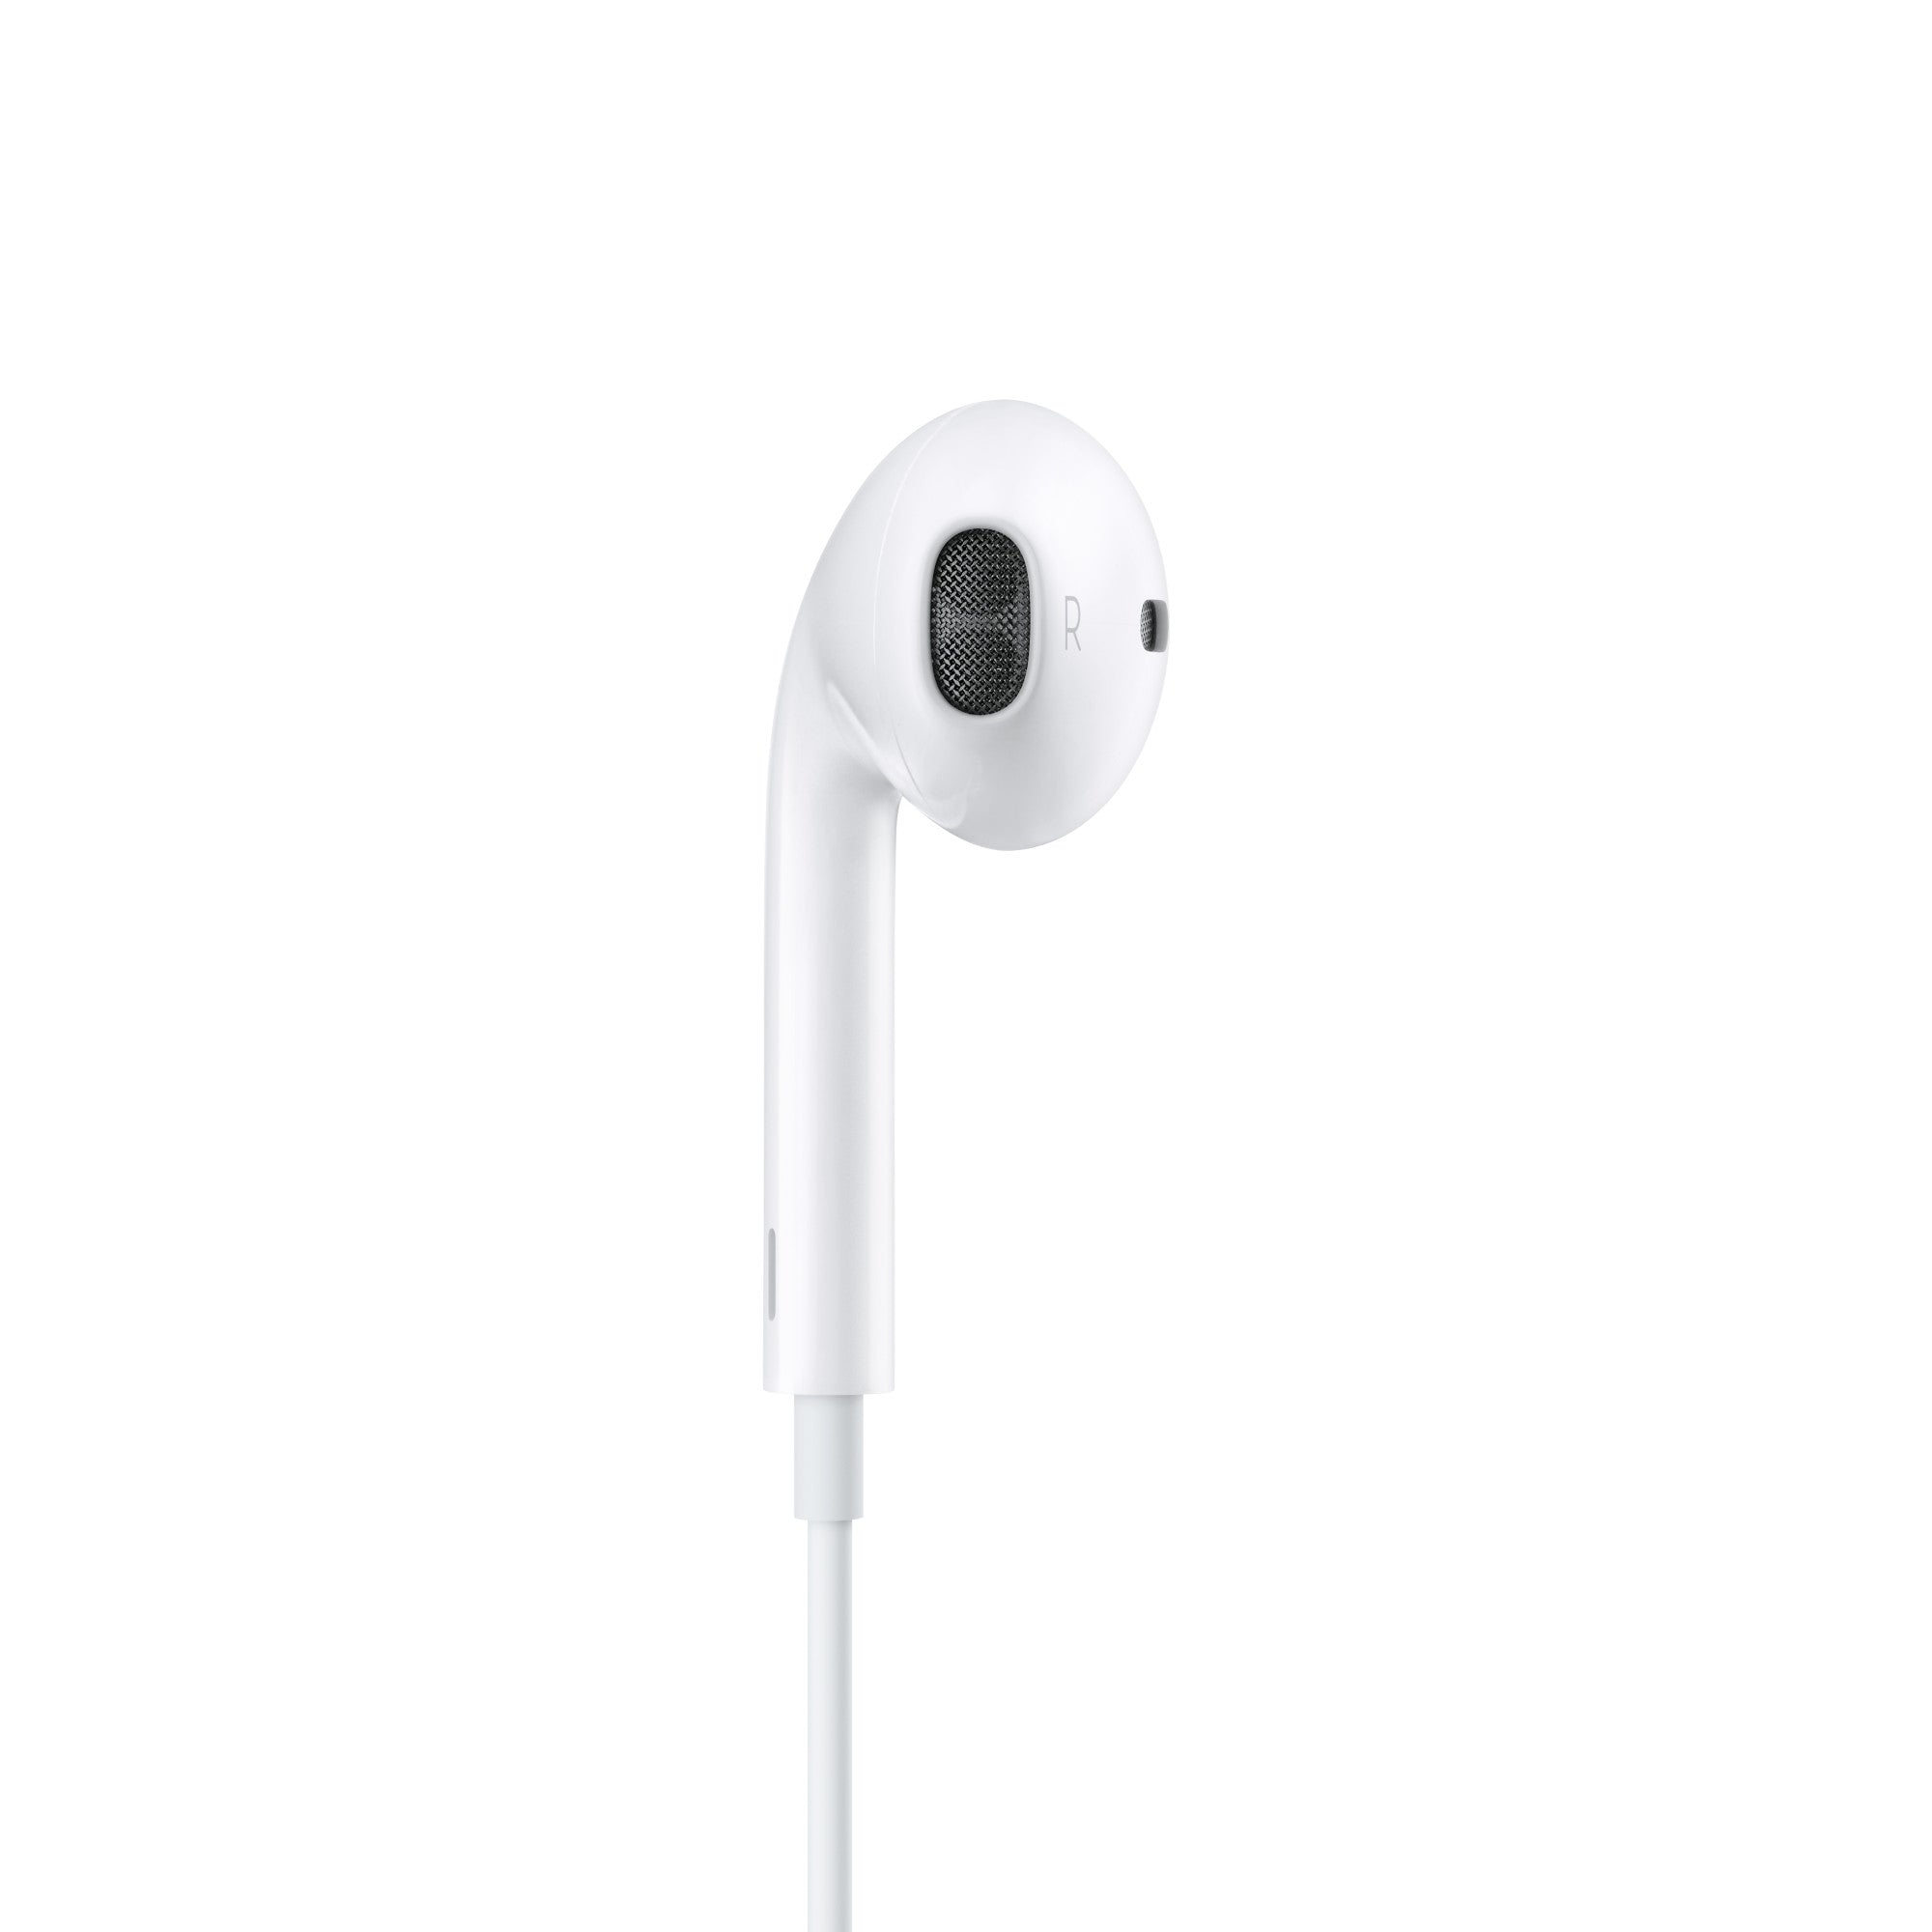 EarPods de Apple con conector USB-C - iShop